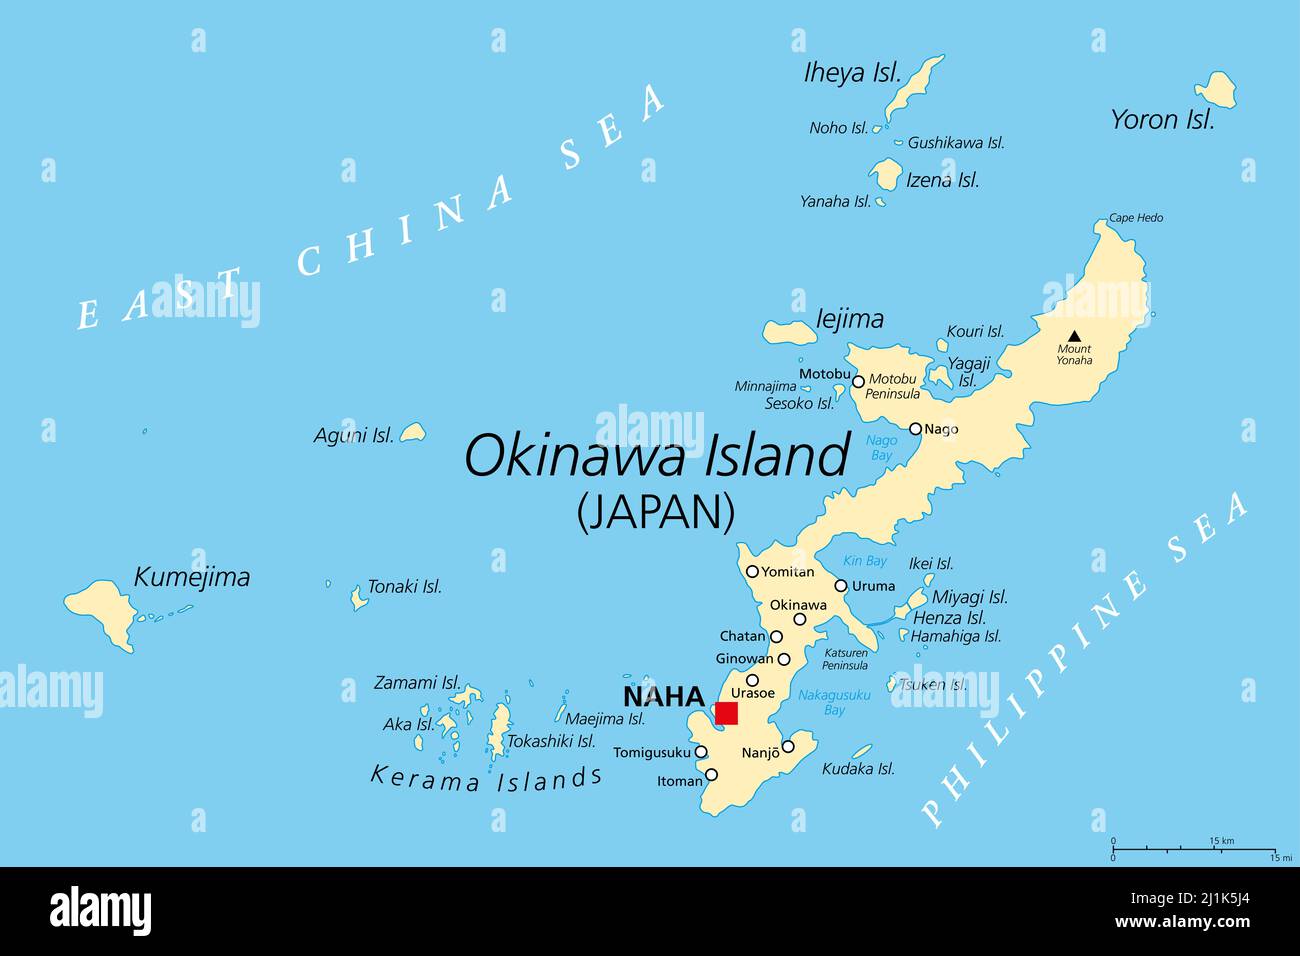 Okinawa-Inseln, politische Landkarte. Inselgruppe in der japanischen Präfektur Okinawa, im Ostchinesischen Meer, mit der Hauptstadt Naha. Teil der Ryukyi-Inseln. Stockfoto